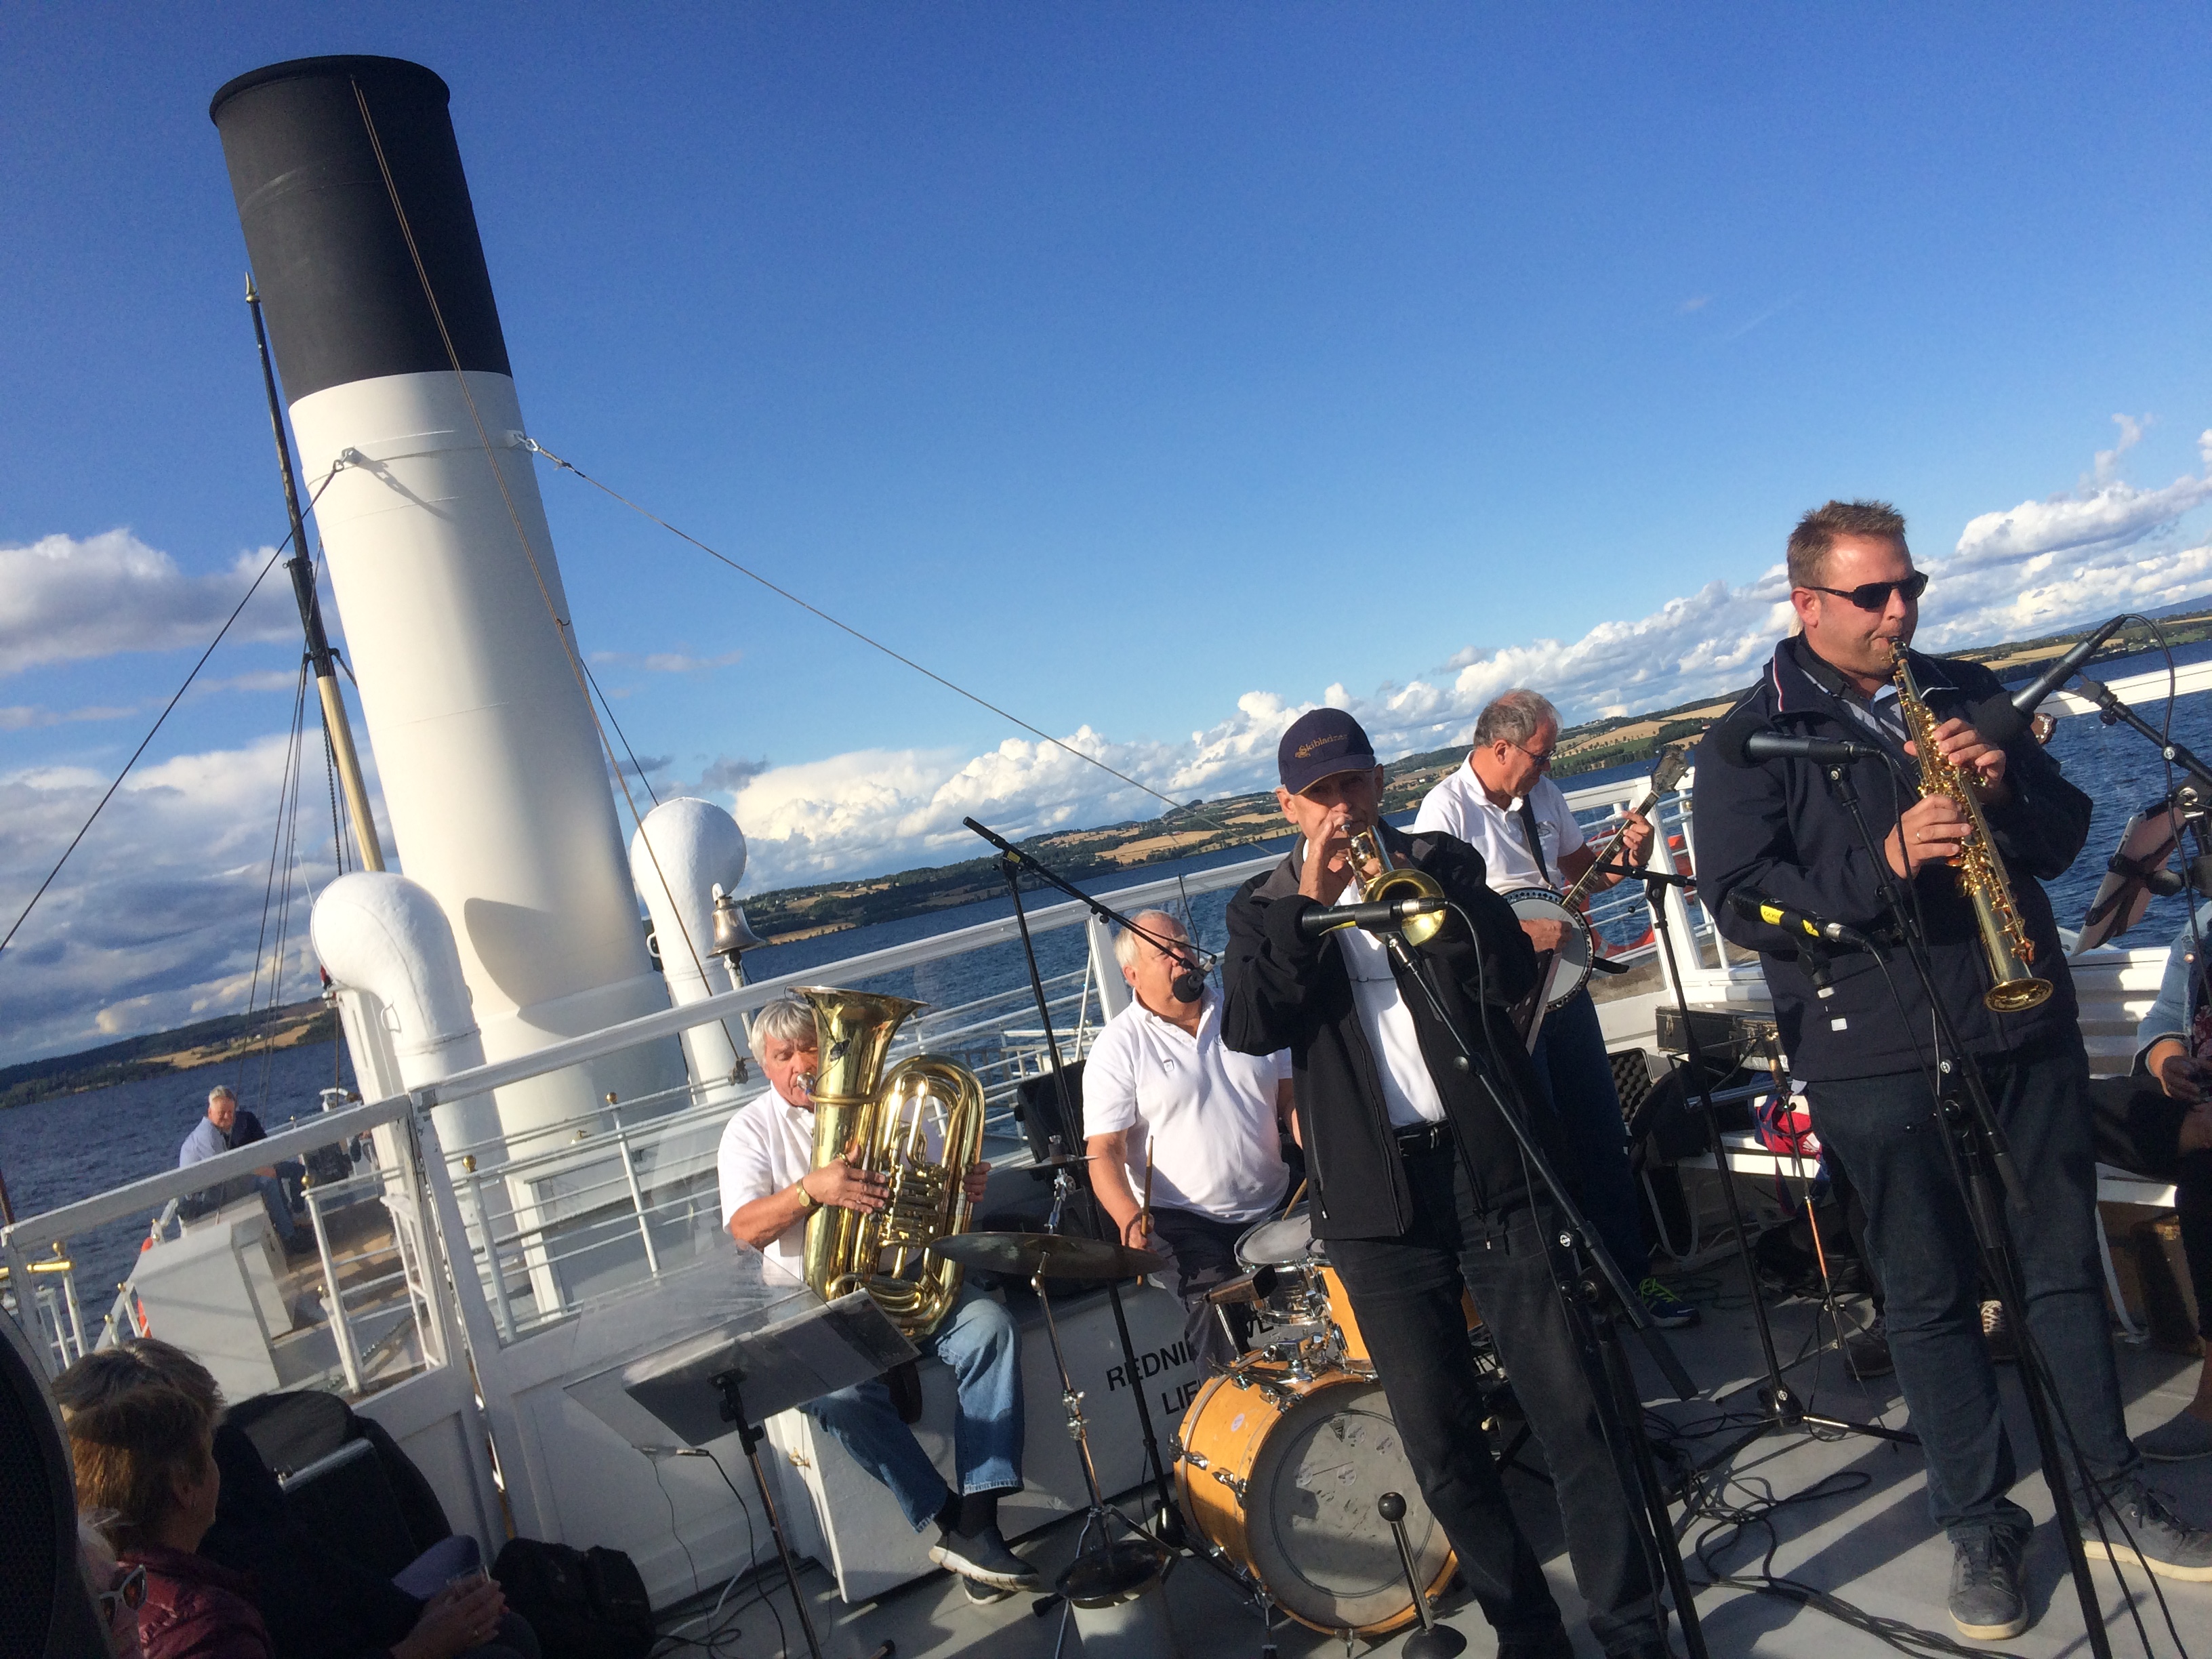 Terje fikk tur med Skibladner til 50 årsdagen: – Svingende musikk og god atmosfære!